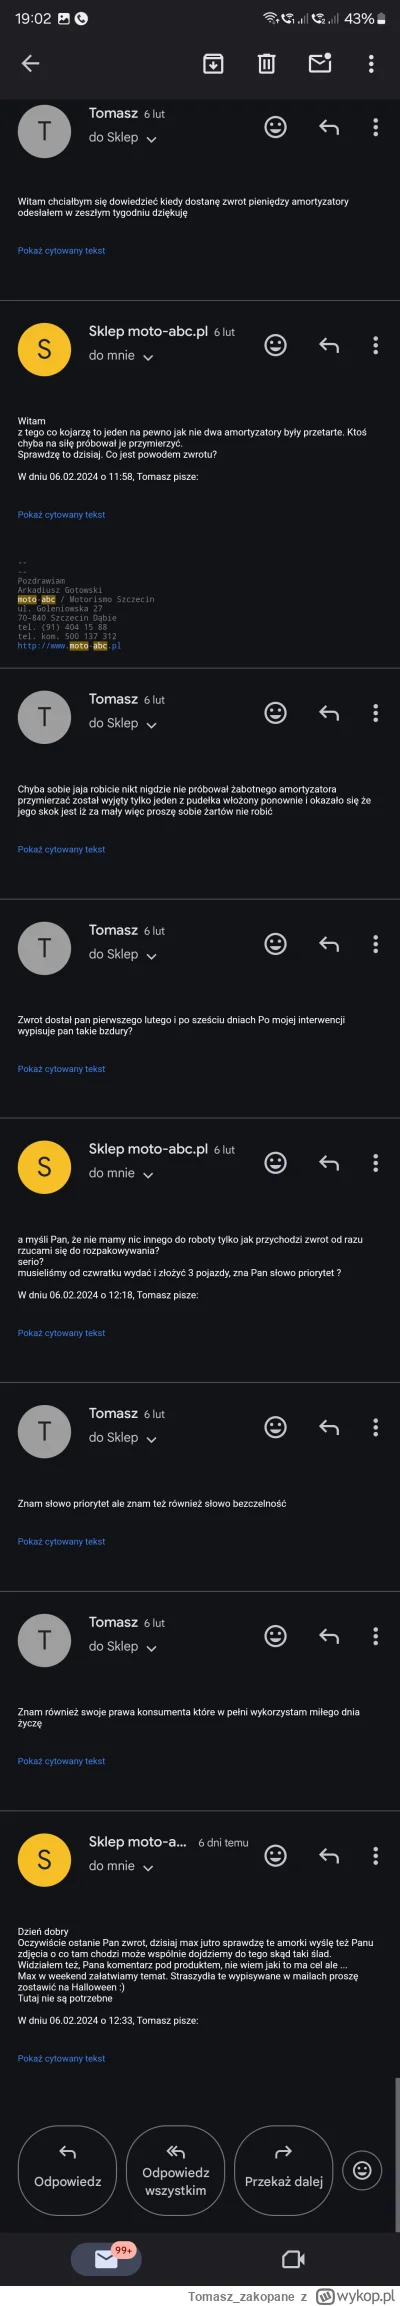 Tomasz_zakopane - Kolejny Janusz biznesu 
Sklep motocyklow moto-abc / Motorismo Szcze...